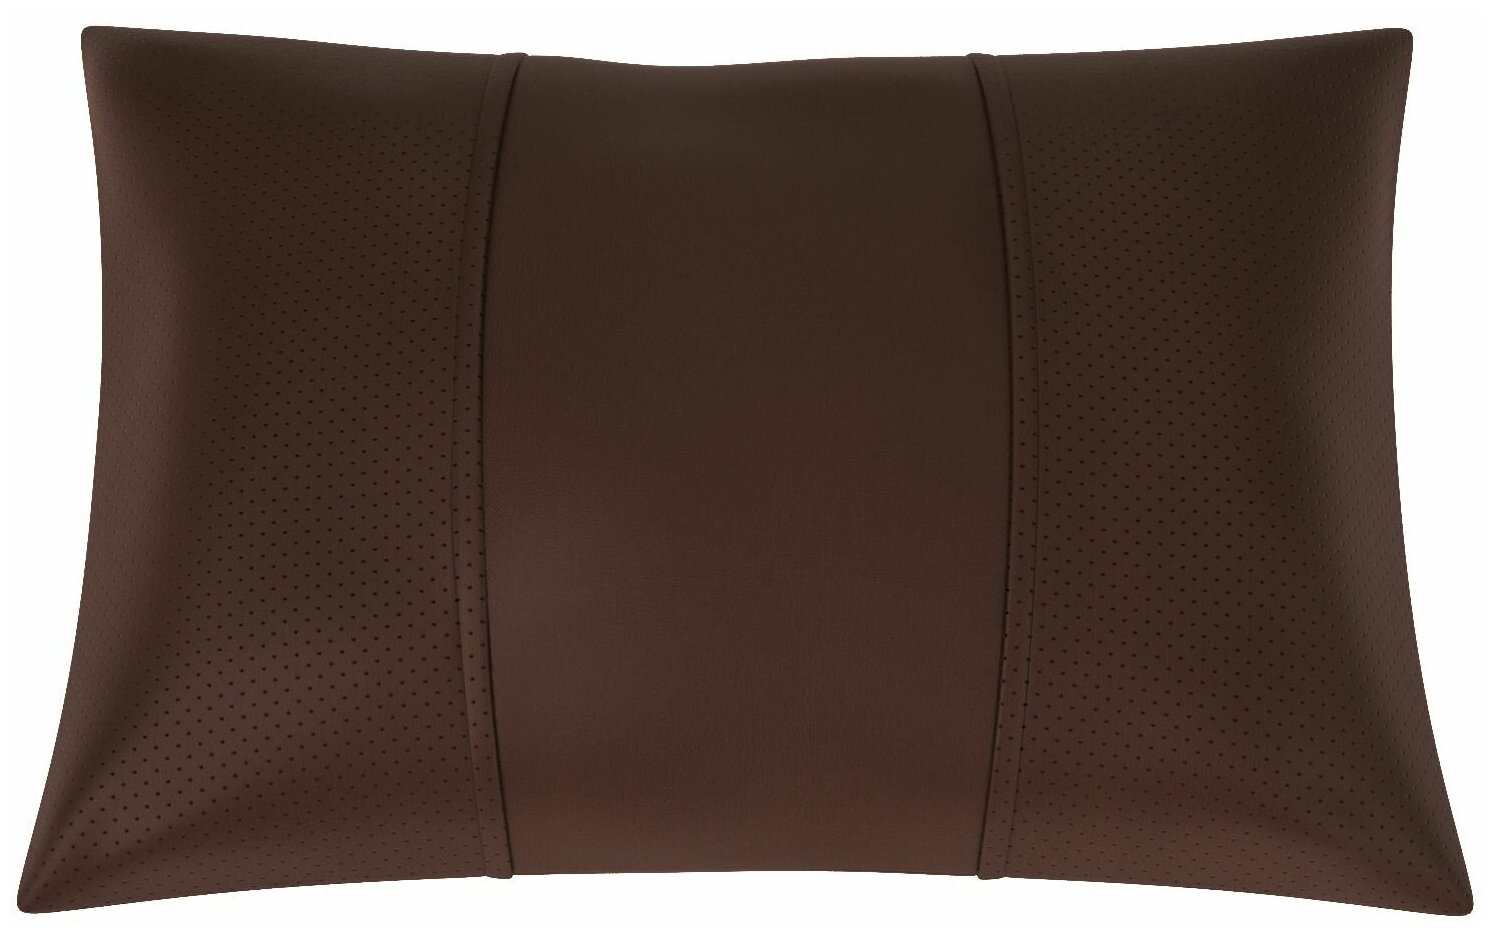 Автомобильная подушка для KIA Optima (Киа Оптима). Экокожа. Середина: шоколад гладкая экокожа. Боковины: шоколад экокожа с перфорацией. 1 шт.